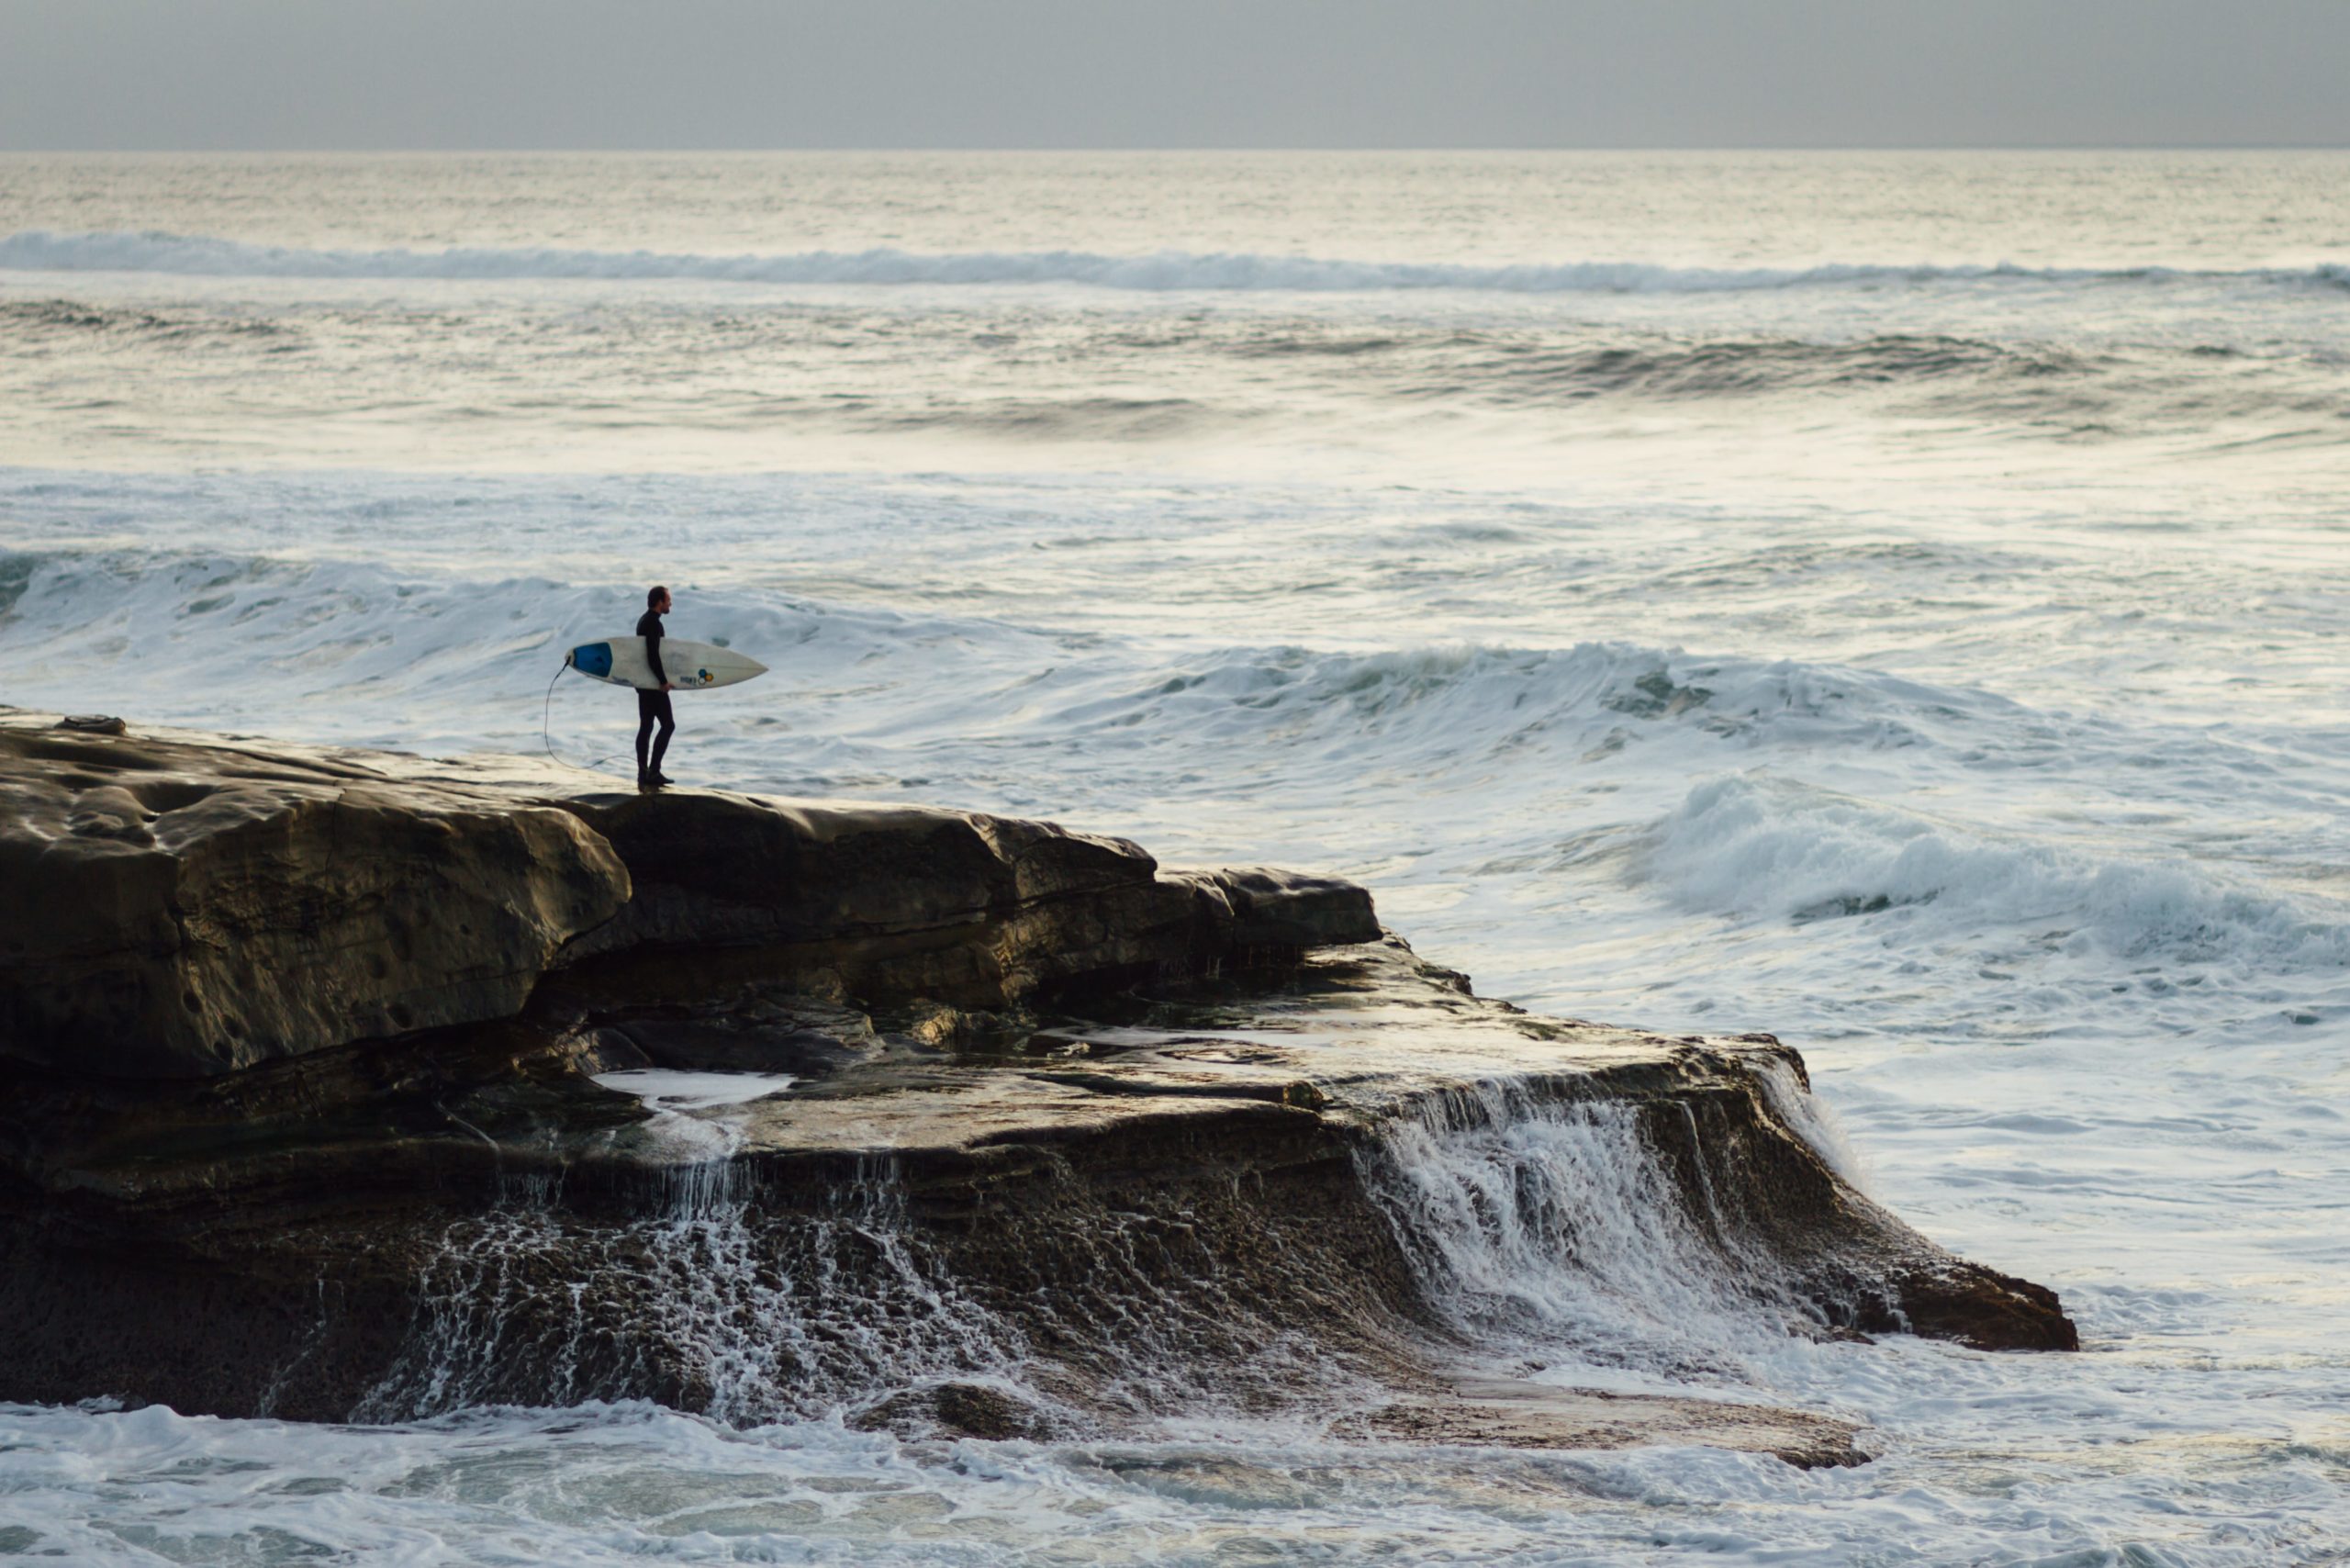 Ein Surfer plant von hohen Klippen ins Wasser zu springen, um ins Lineup zu gelangen. Sowohl die Energie der Wellen als auch der harte Meeresboden können in diesem Fall zu einer Surfverletzung führen.